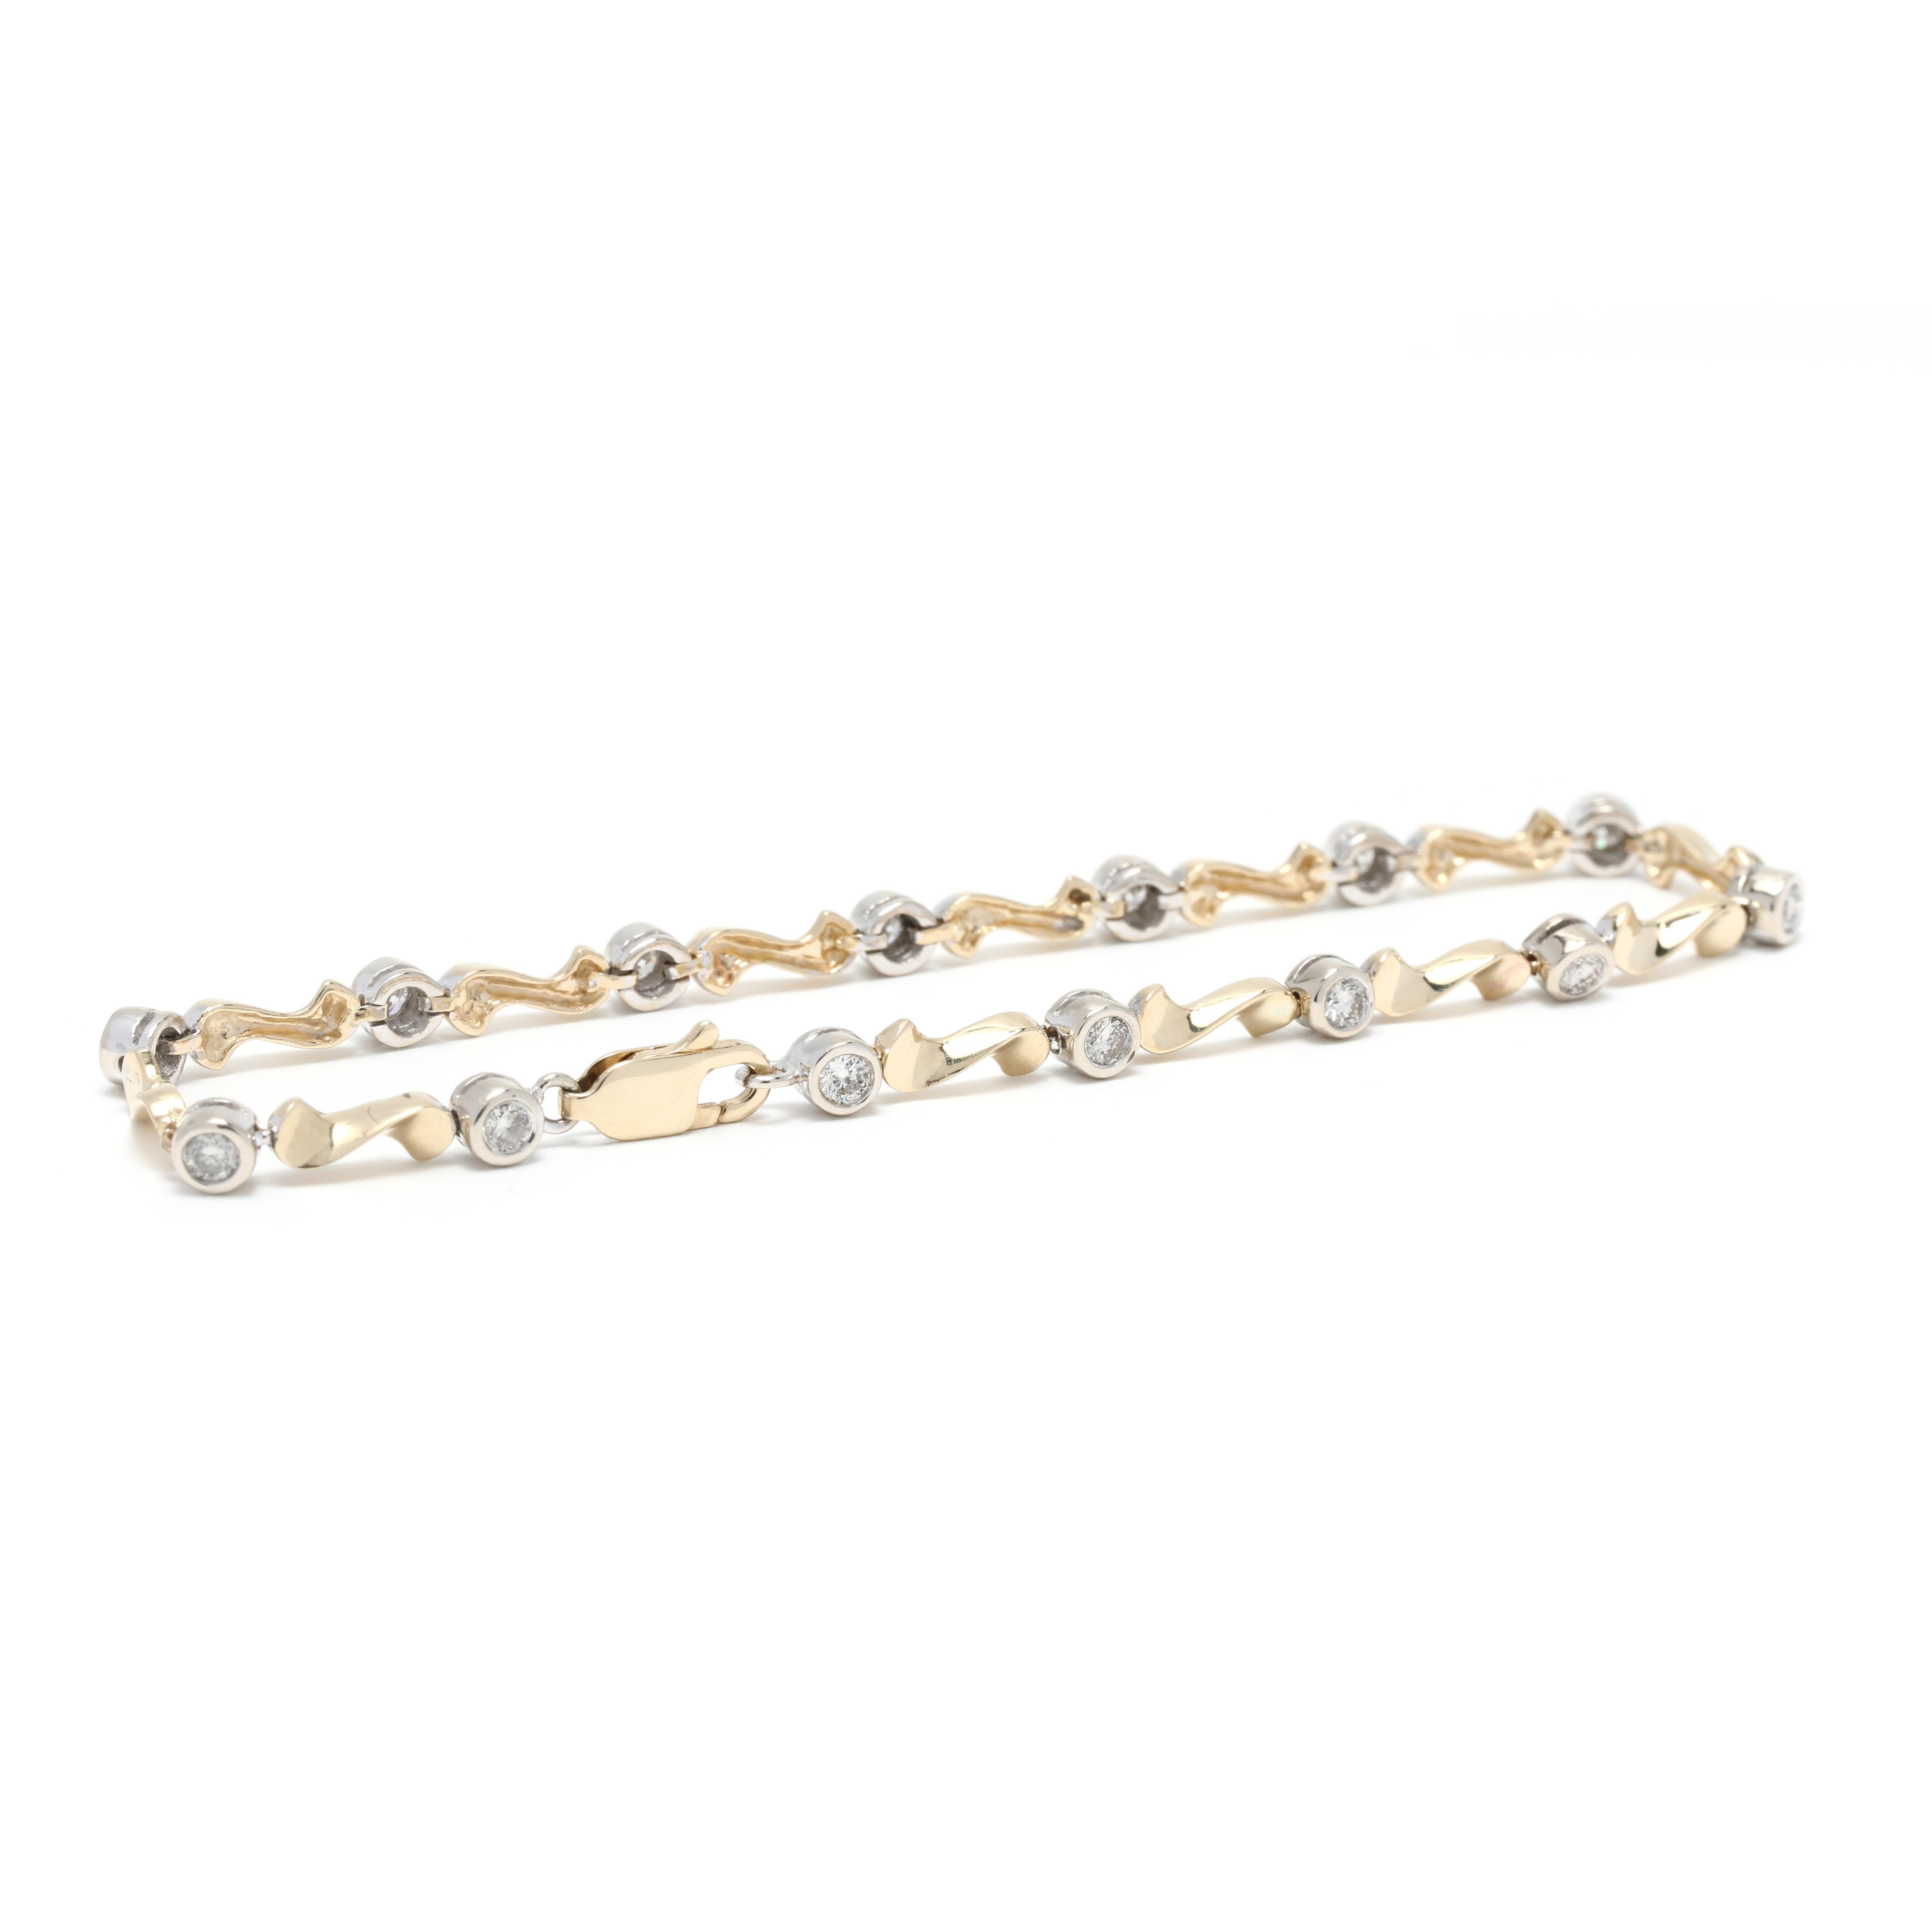 Ce bracelet exquis en diamant tourbillonnant d'un poids total de 1 carat est fabriqué en or jaune 14 carats, avec une longueur de 7 pouces. Ce bracelet de tennis en diamant fantaisie présente un brillant arrangement de diamants qui brillent et